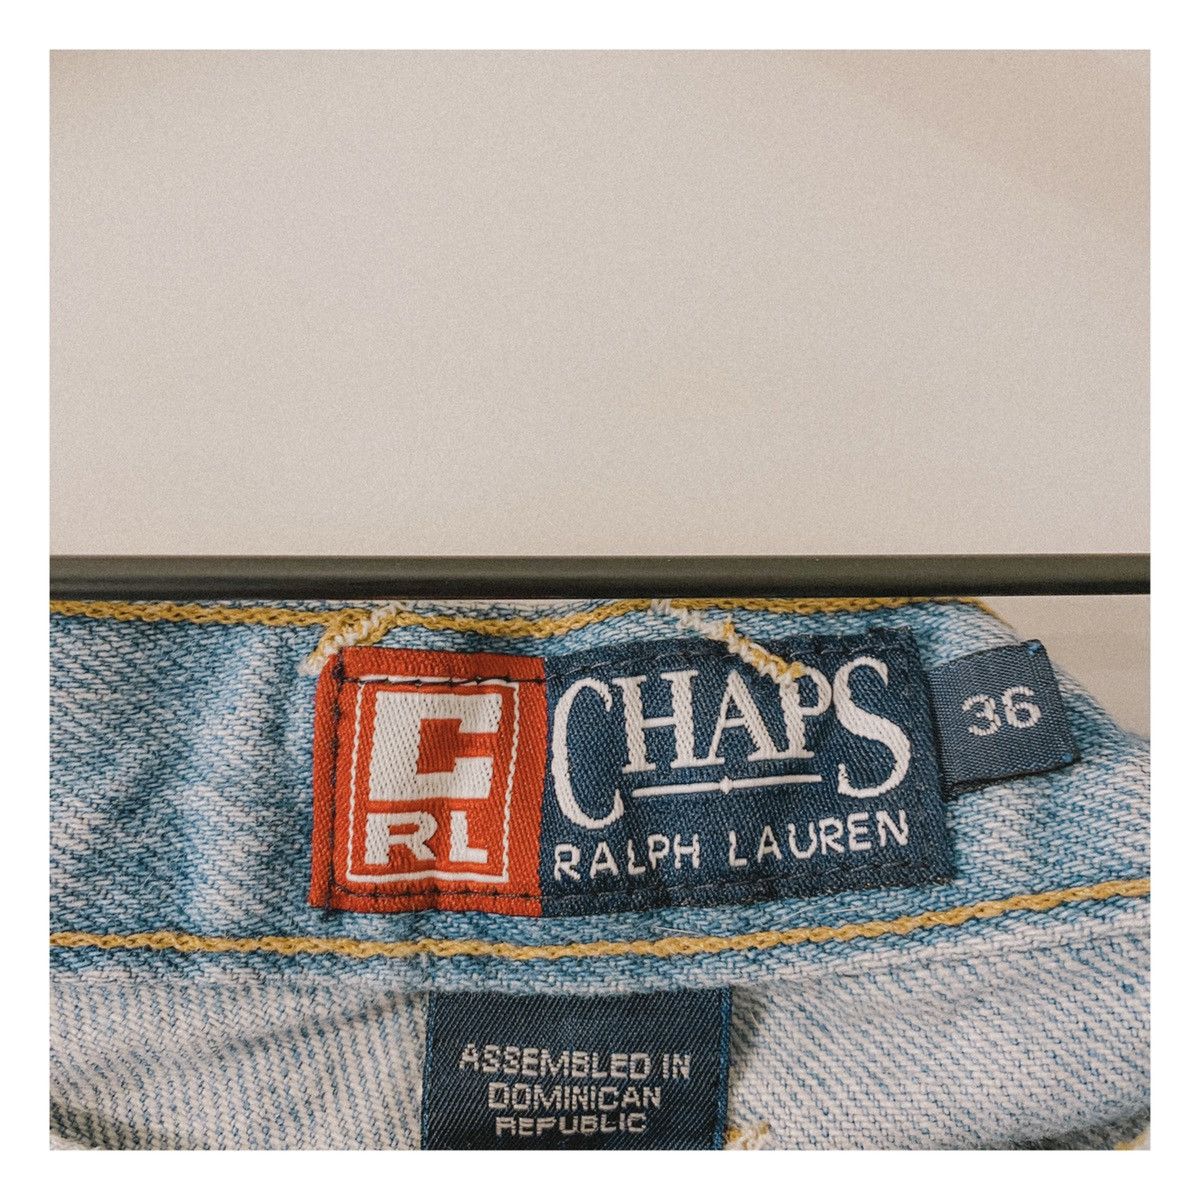 Chaps Ralph Lauren Vintage Chaps Ralph Lauren denim shorts Size US 36 / EU 52 - 3 Thumbnail